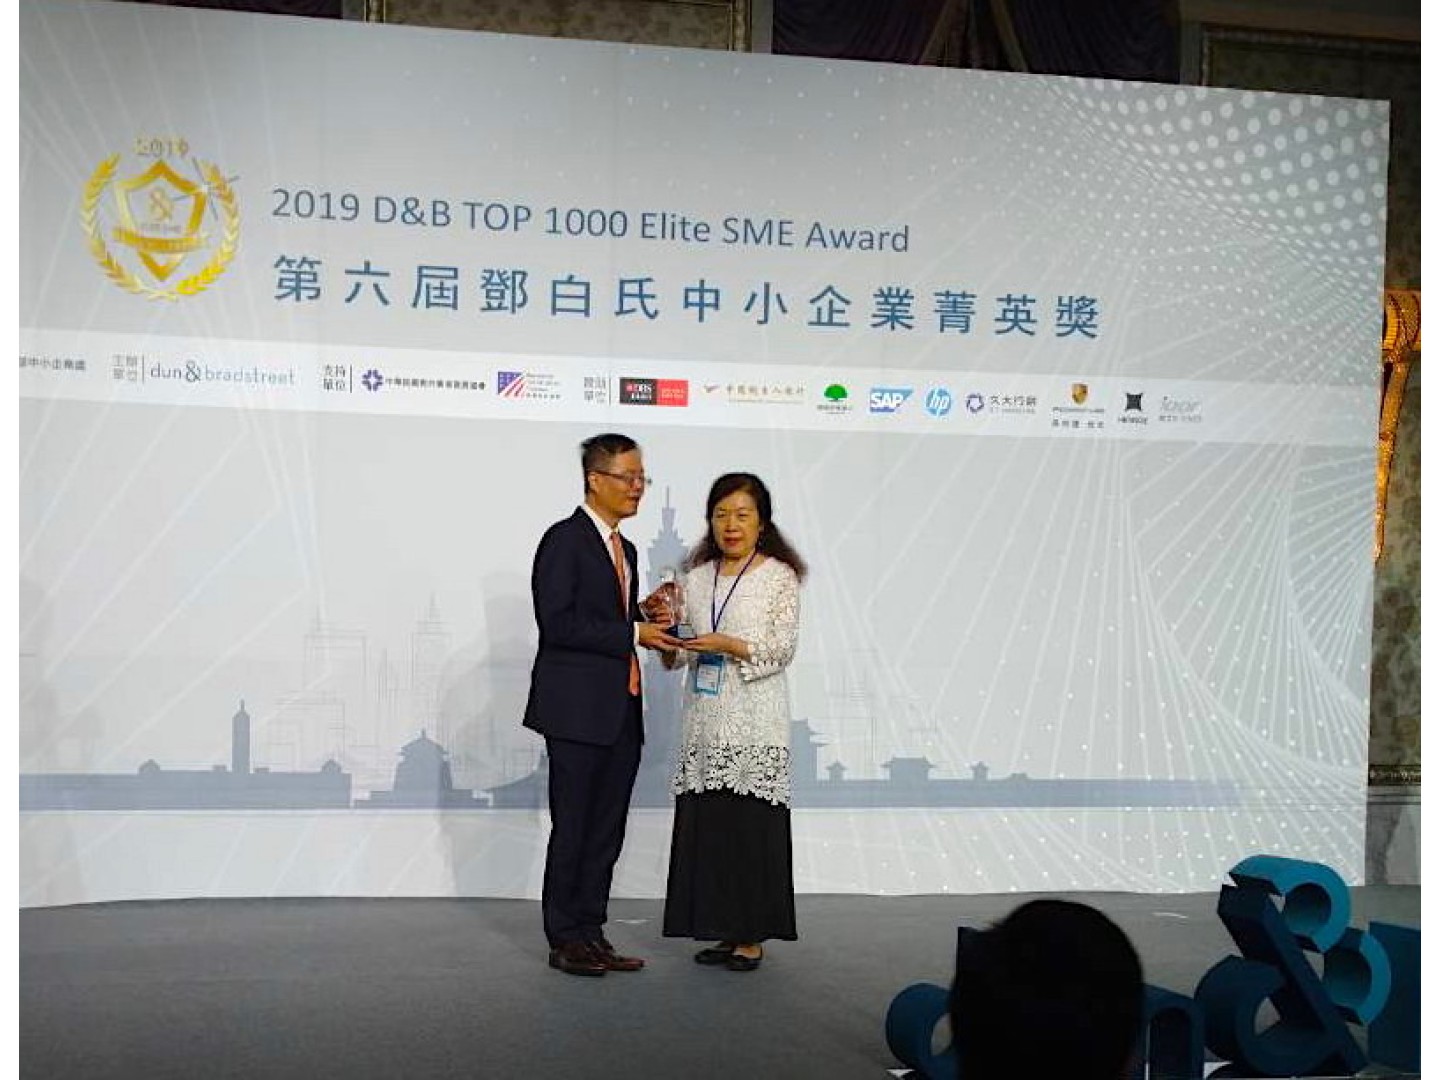 TCTM (HongKong)Ltd., Taiwan Branch Office got the award from Dun & Bradstreet International Ltd., Taiwan Branch.